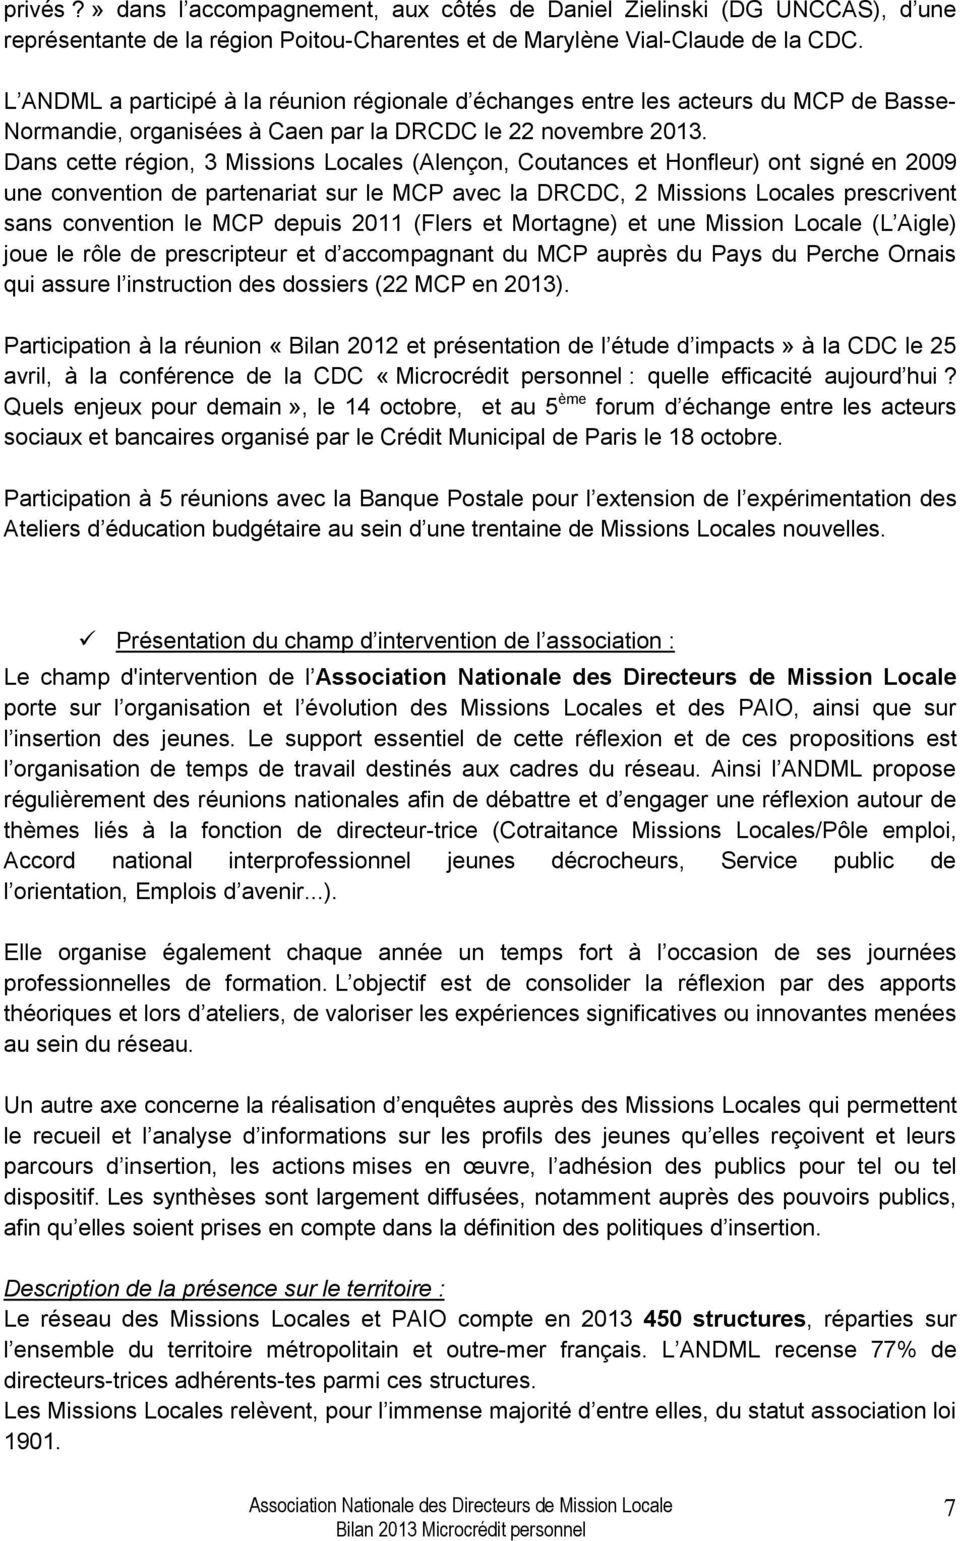 Dans cette région, 3 Missions Locales (Alençon, Coutances et Honfleur) ont signé en 2009 une convention de partenariat sur le MCP avec la DRCDC, 2 Missions Locales prescrivent sans convention le MCP